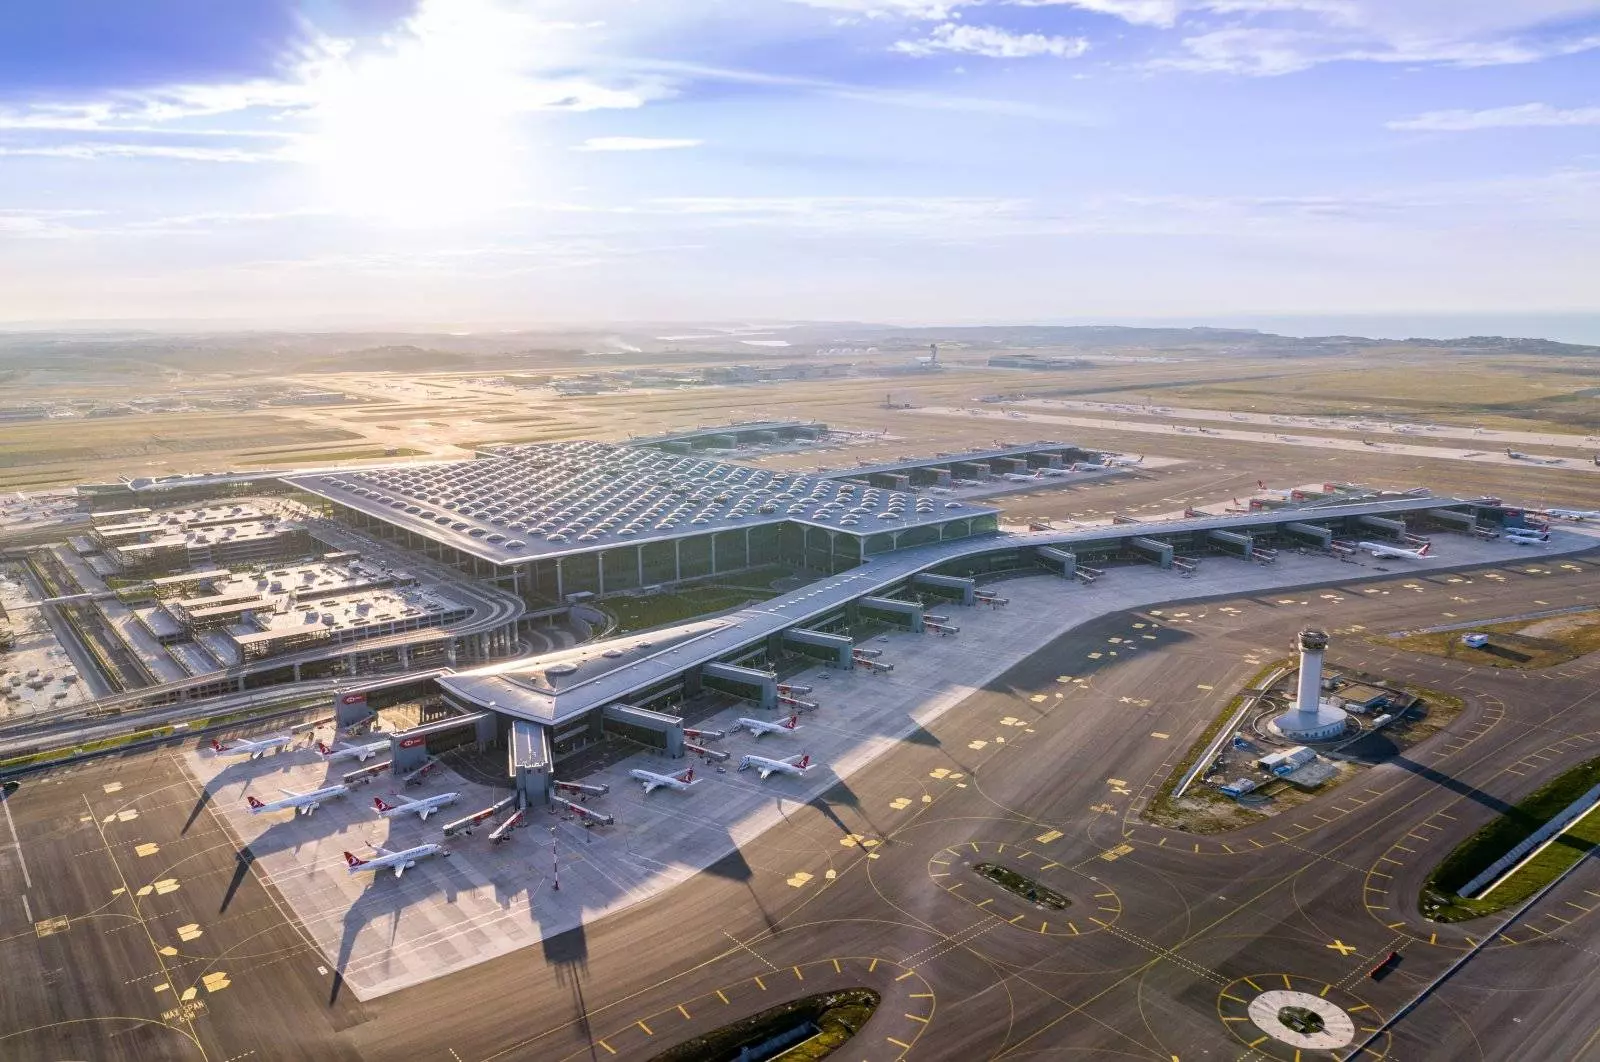 9 самых крупных аэропортов мира по пассажиропотоку и масштабам